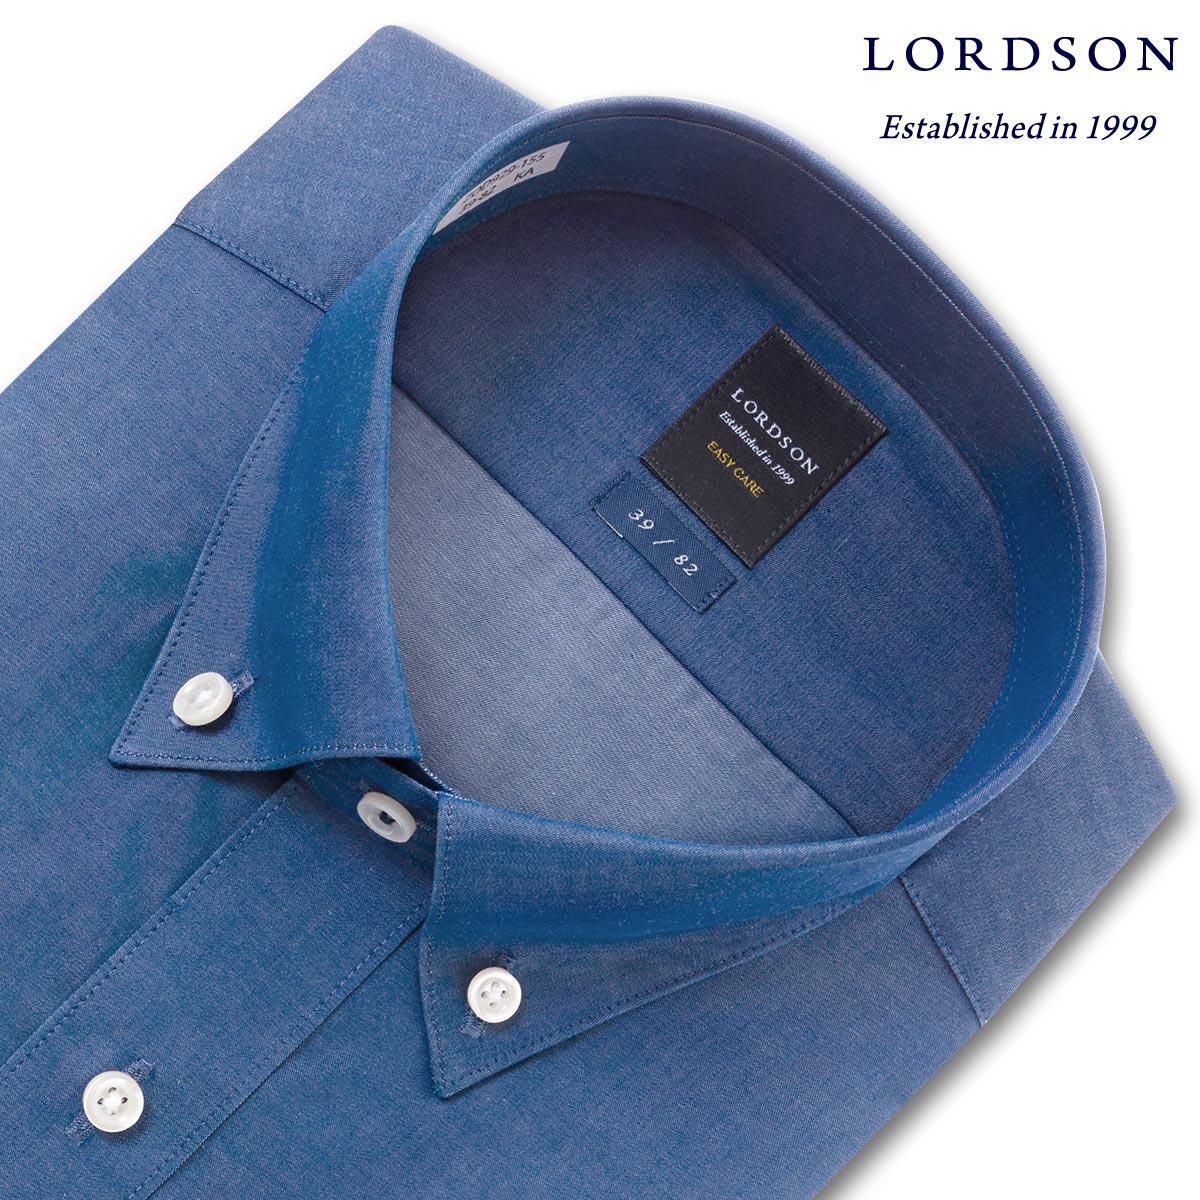 LORDSON 長袖 ワイシャツ メンズ 形態安定 ショートボタンダウン ダンガリーインディゴブルー 綿100% (zod929-155)